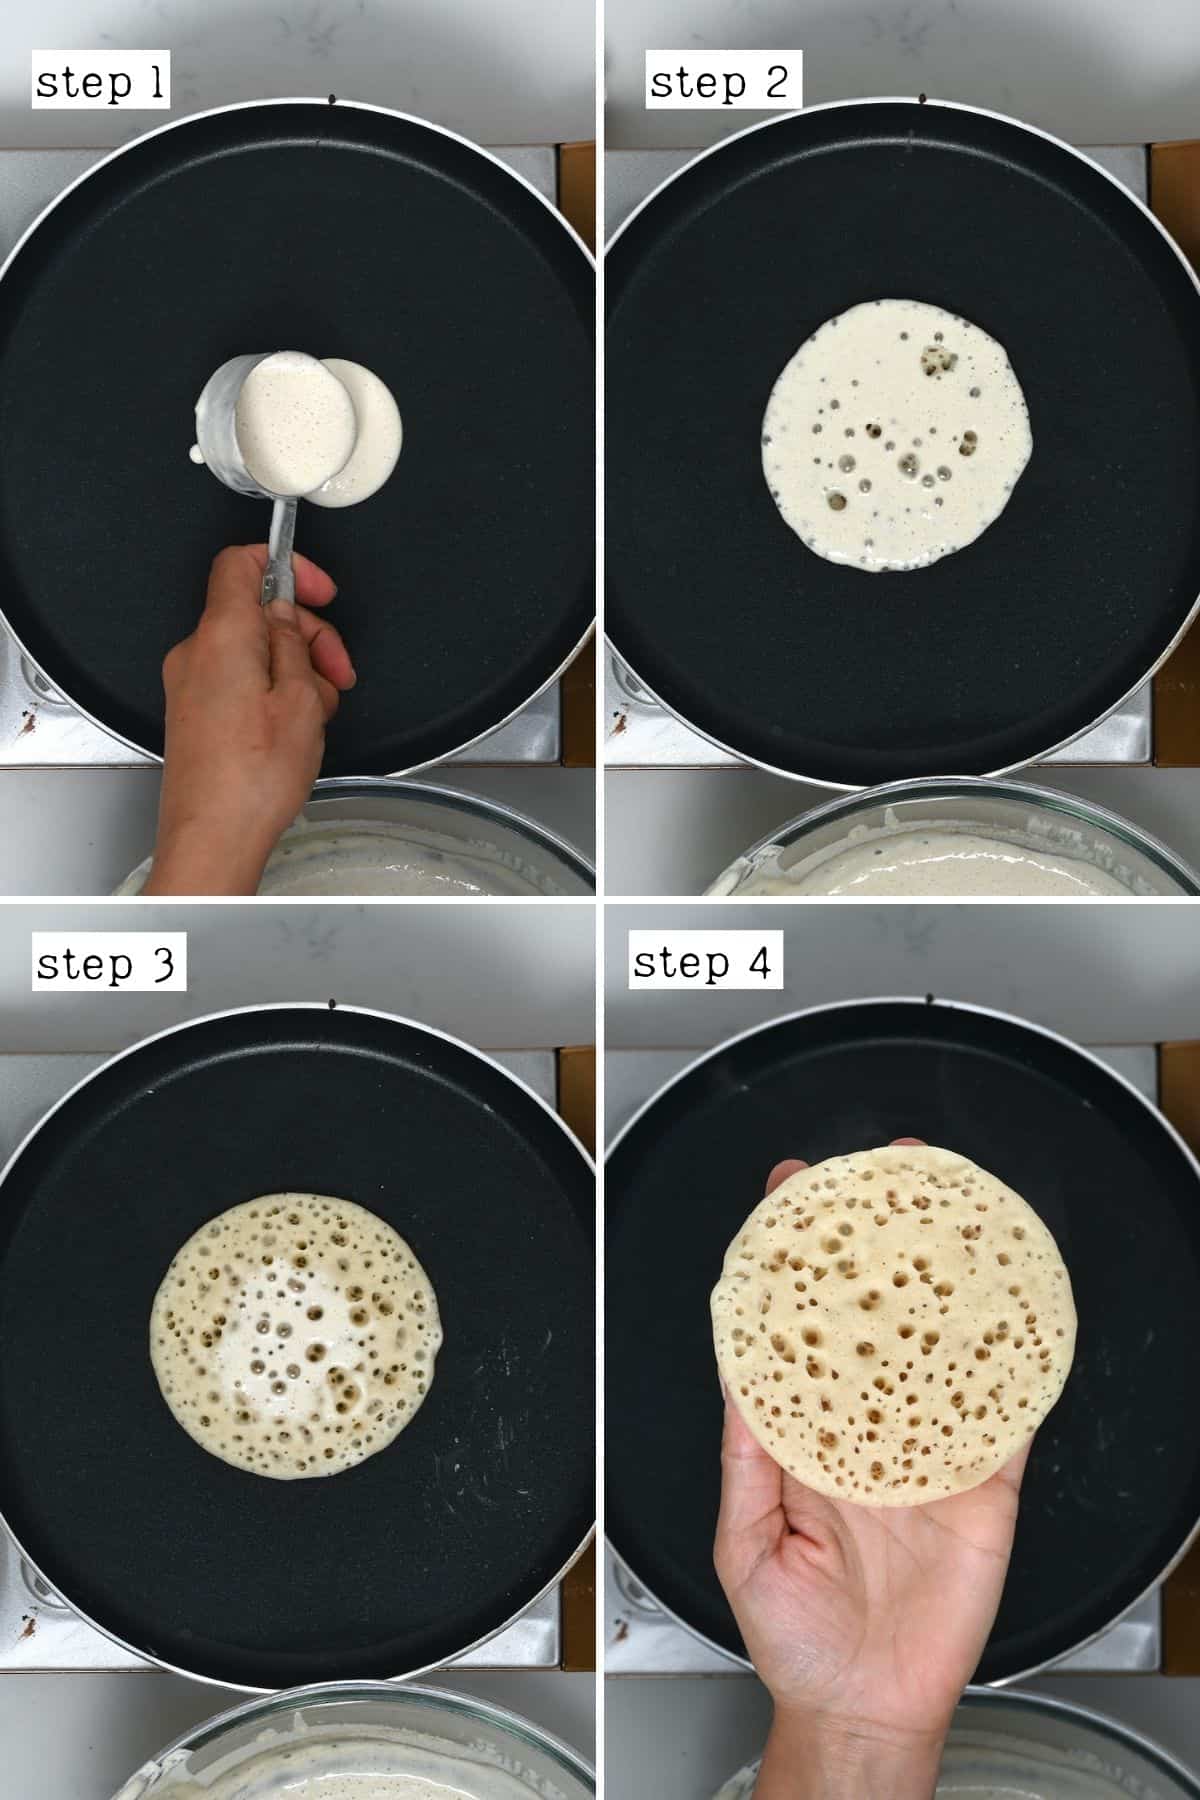 Steps for preparing qatayef pancakes